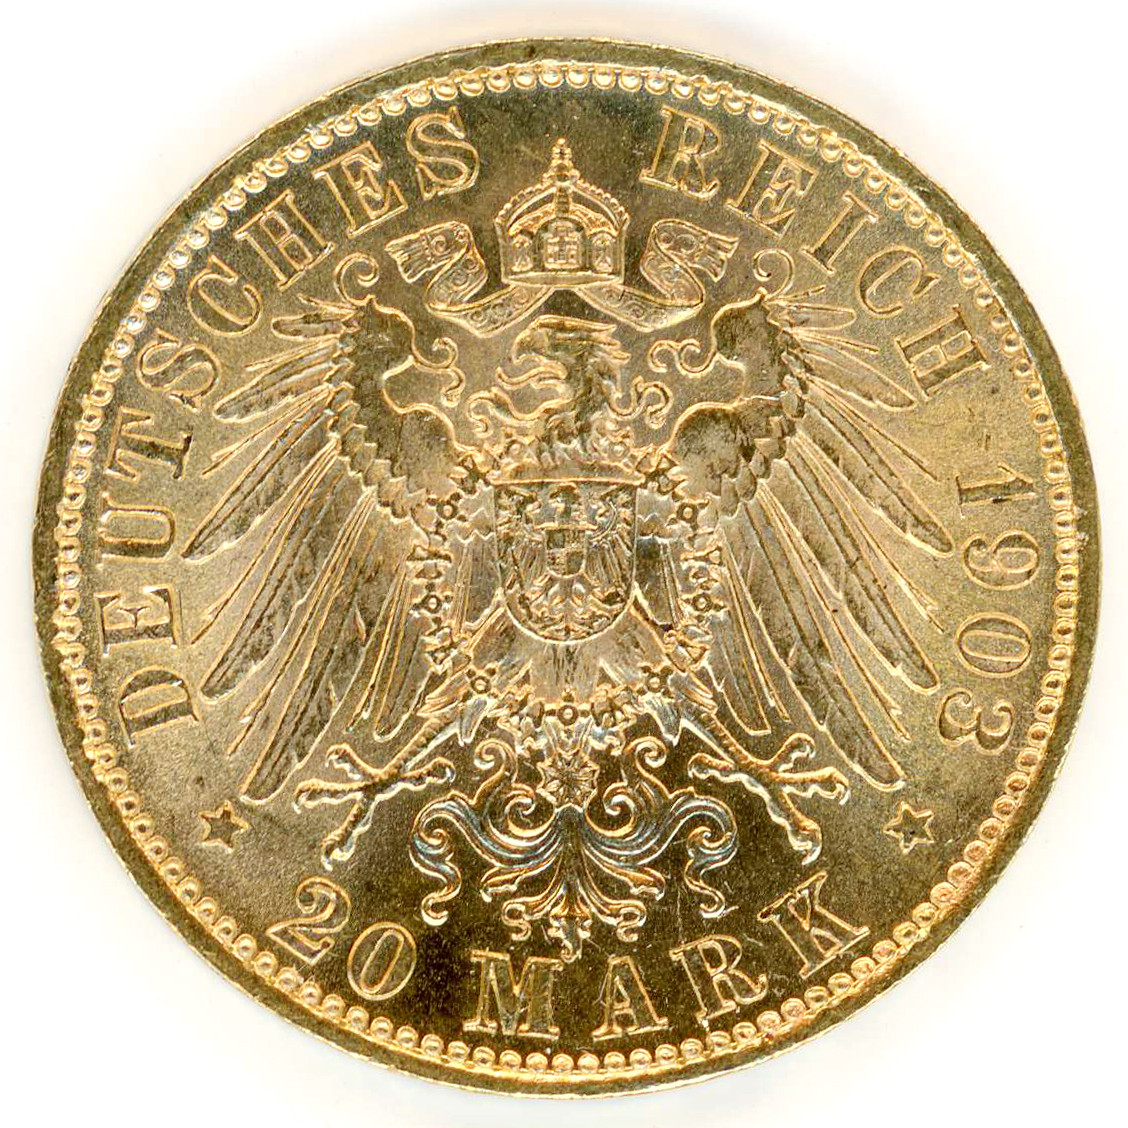 Allemagne - 20 Mark - 1903 E revers